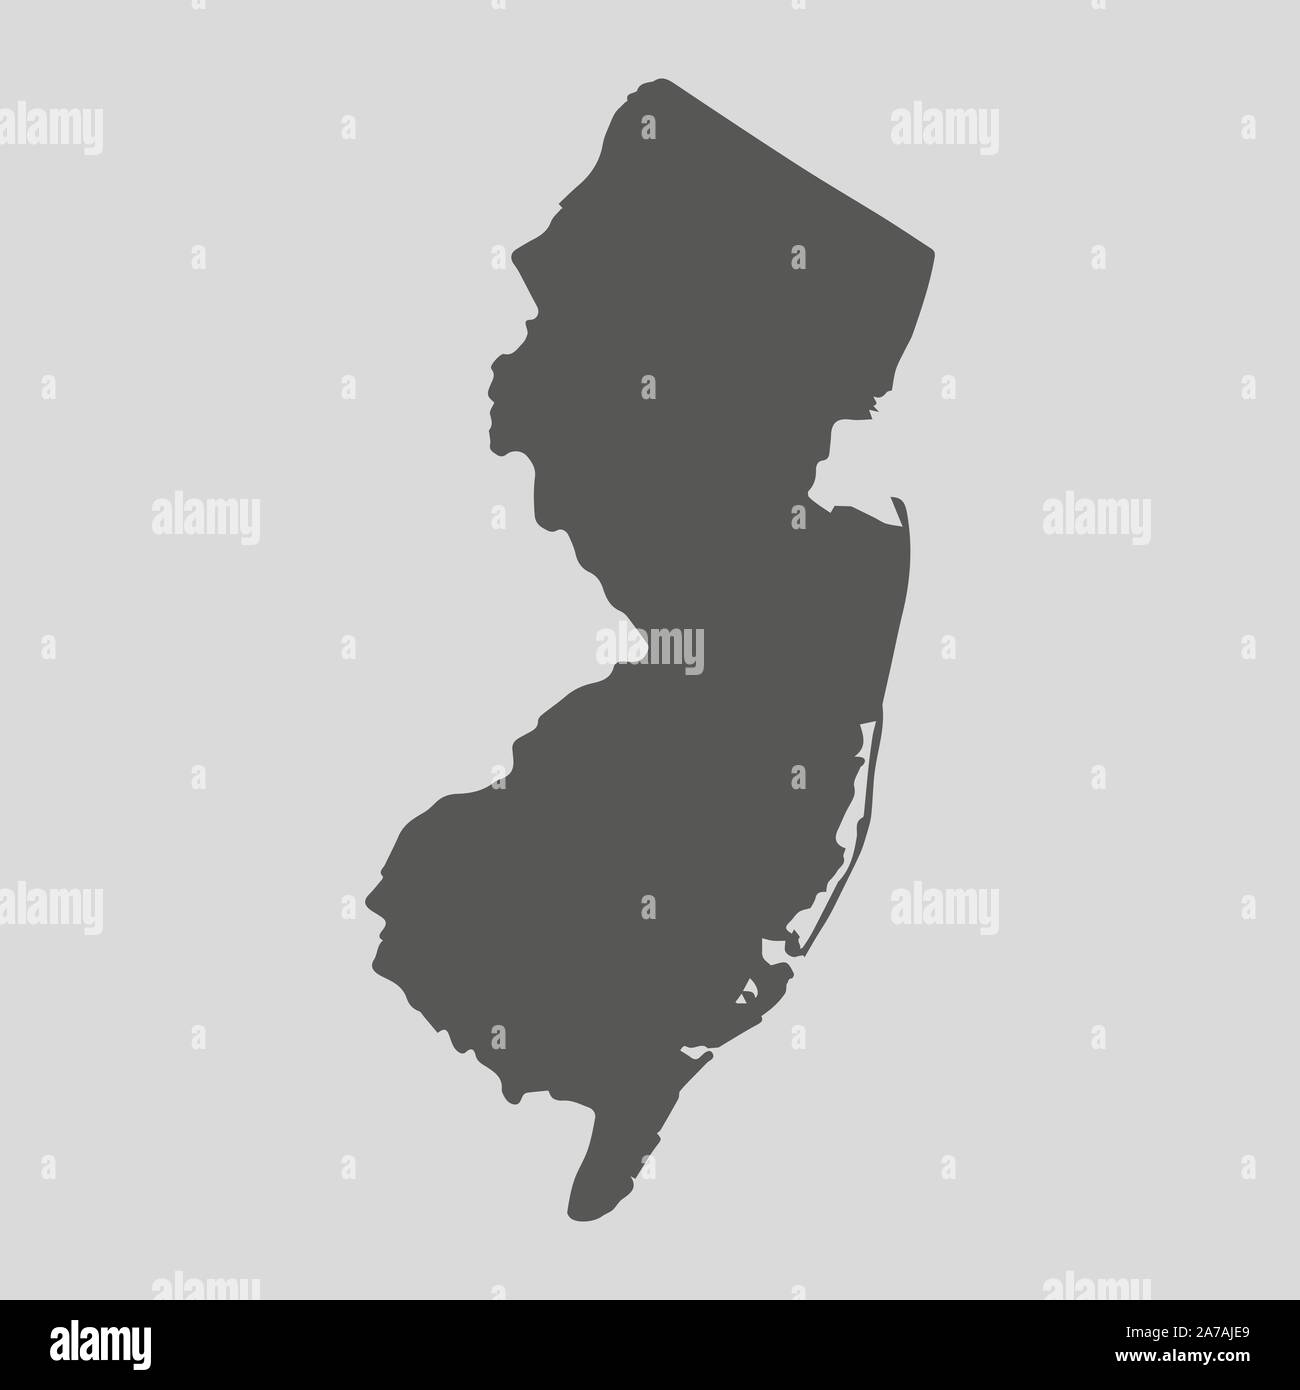 Schwarze Karte des Staates New Jersey-Vector Illustration. Einfache flache Karte von New Jersey. Stock Vektor